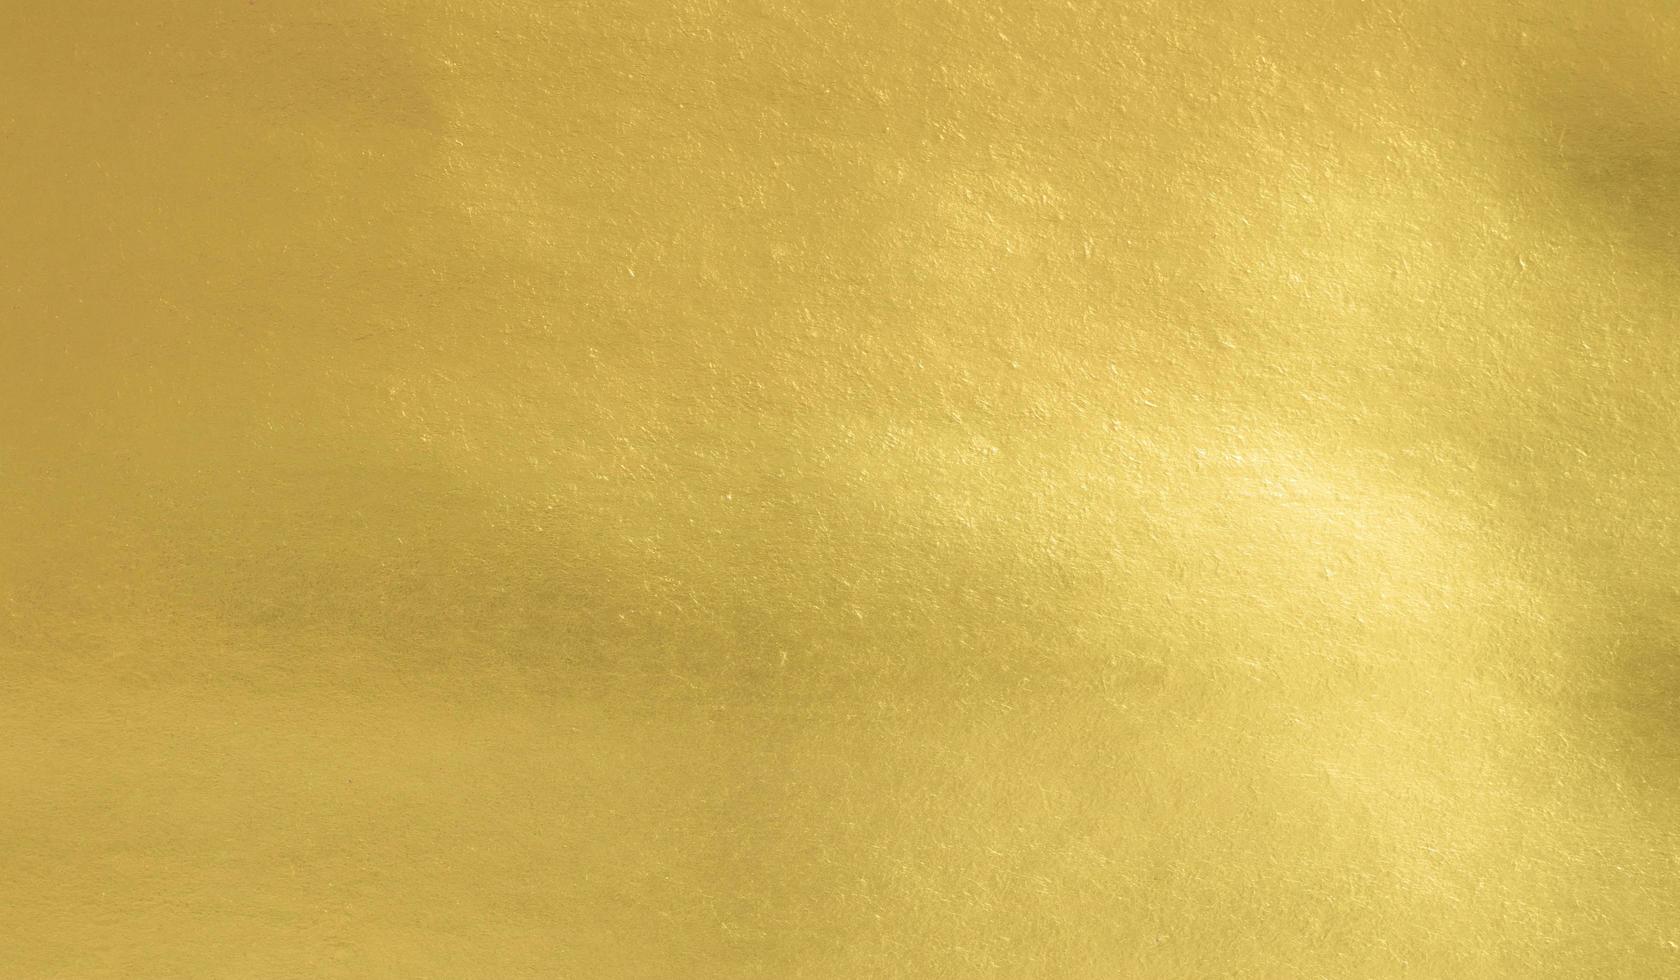 sfondo texture carta lamina d'oro, lamina di lusso lucida orizzontale con design unico di carta, stile naturale morbido per un design creativo estetico foto